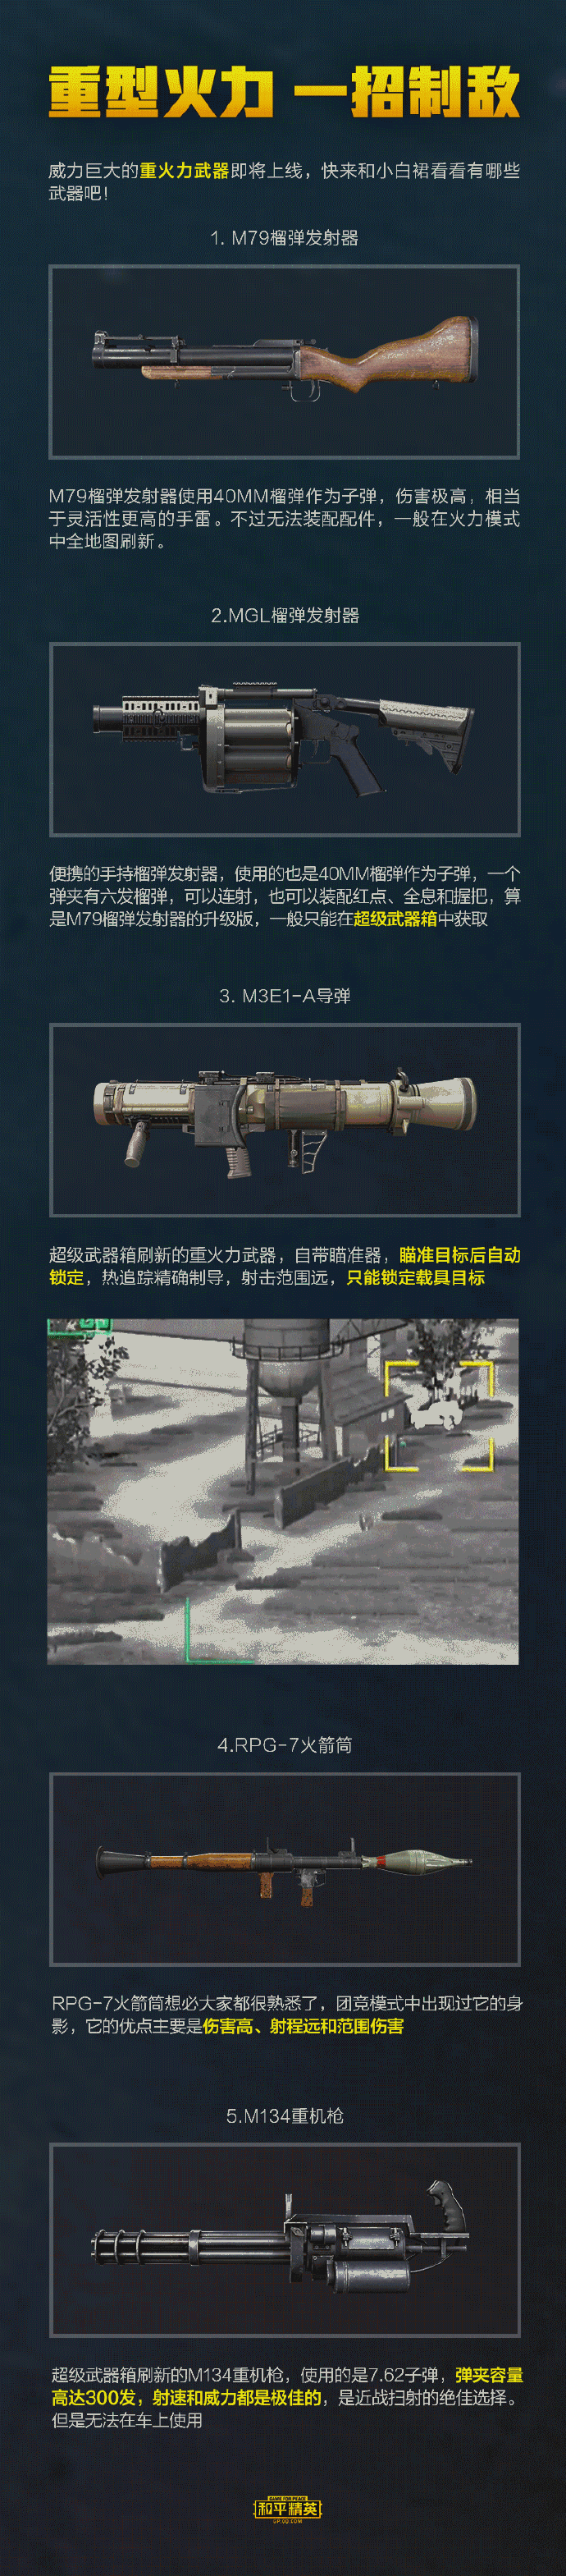 激光导弹视频_激光导弹防御_有激光导弹的手机游戏